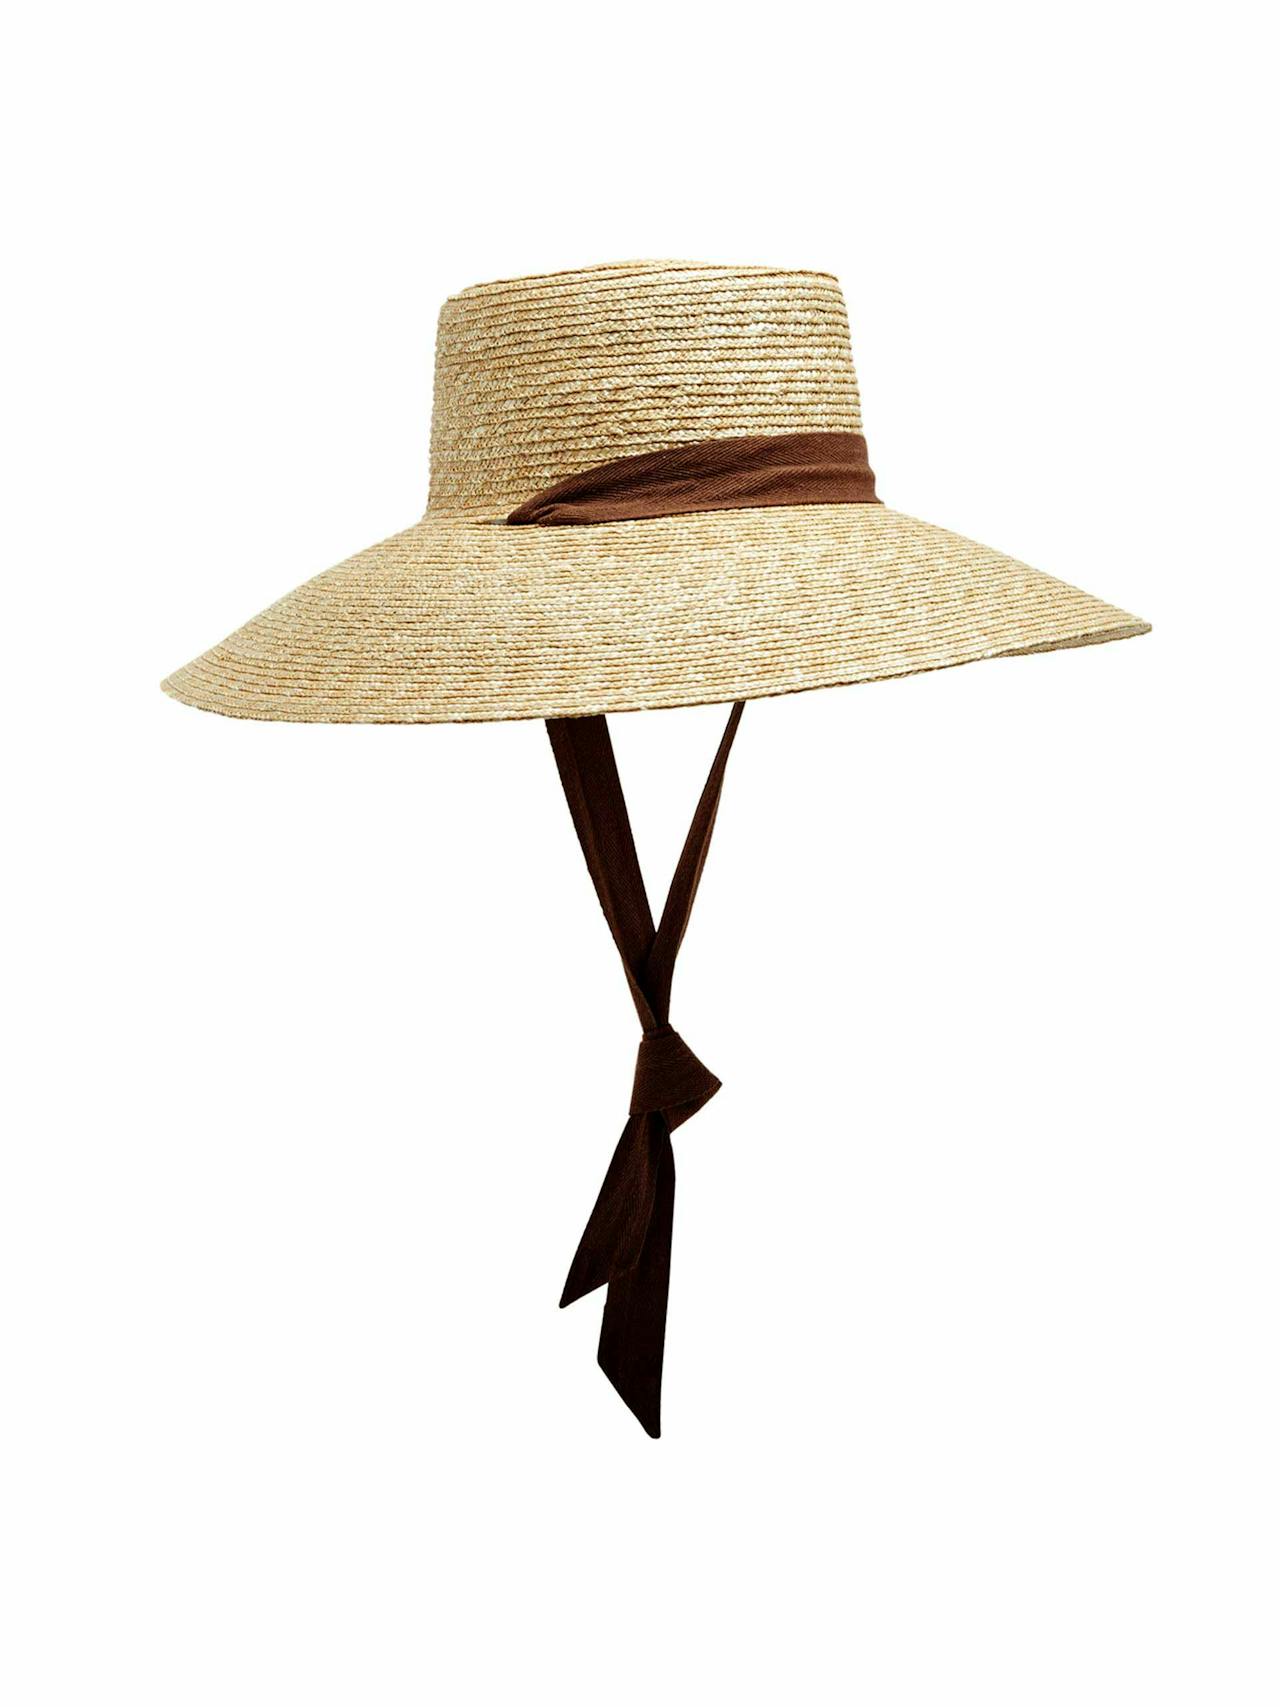 Paloma straw sun hat